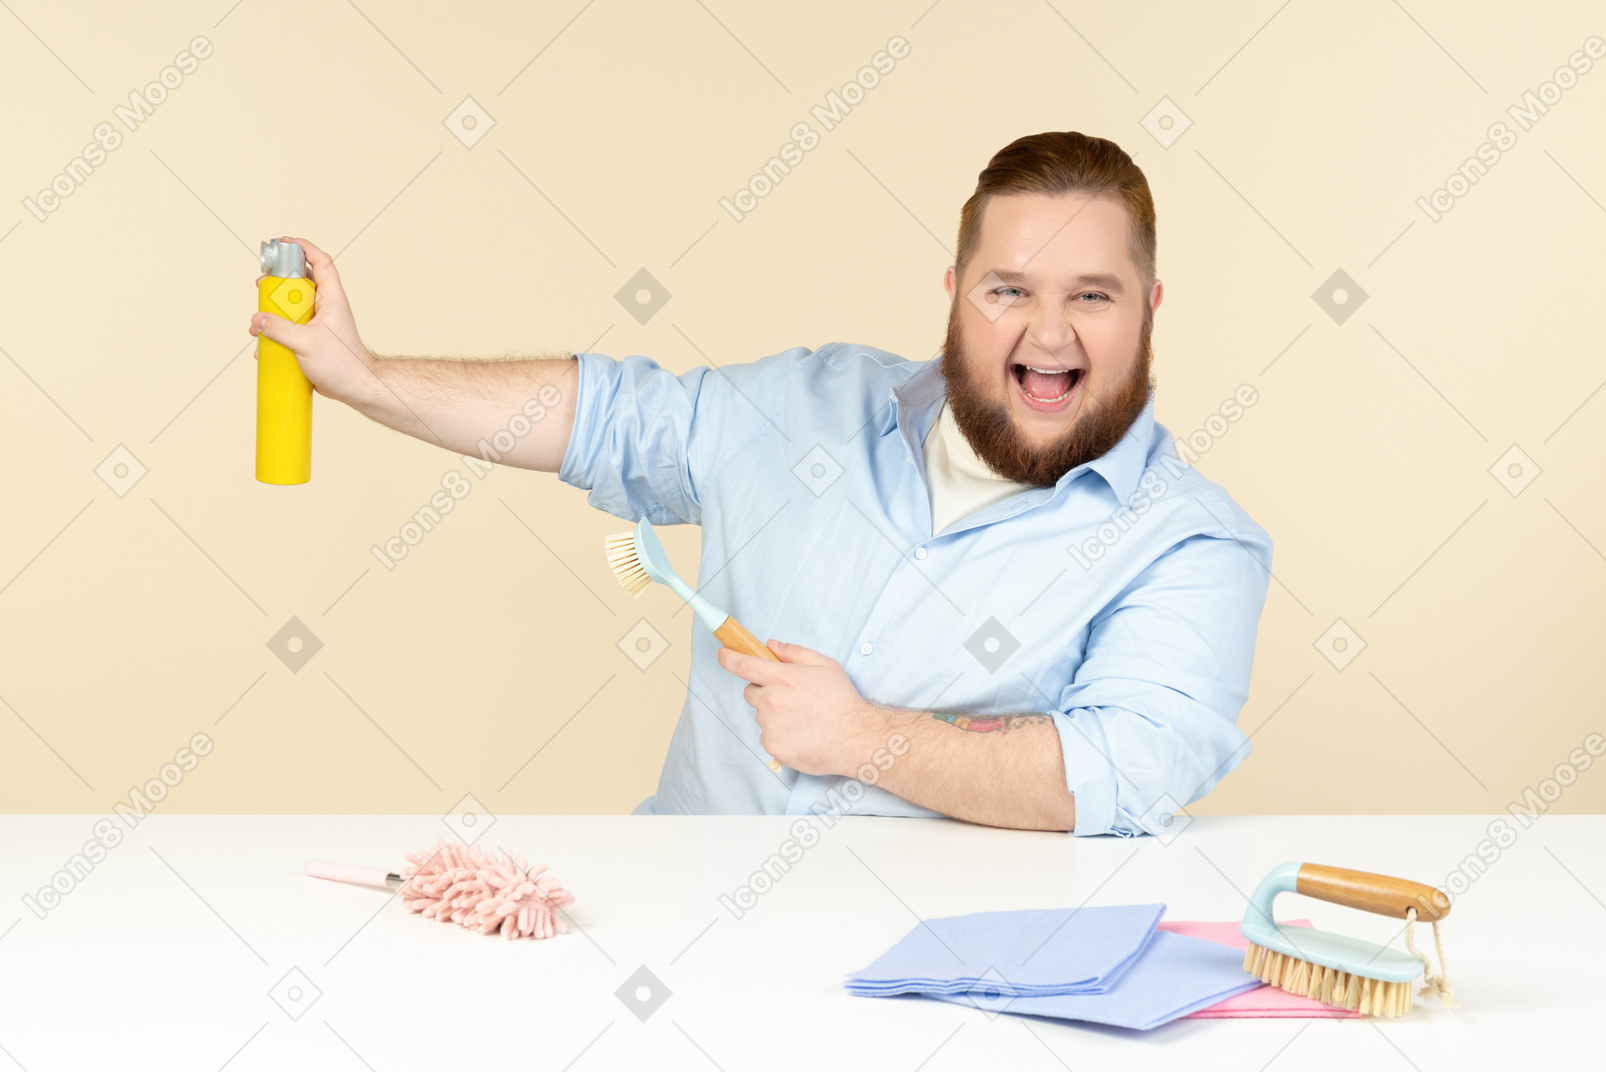 Junger übergewichtiger mann, der im profil am tisch sitzt und reinigungsgeräte hält